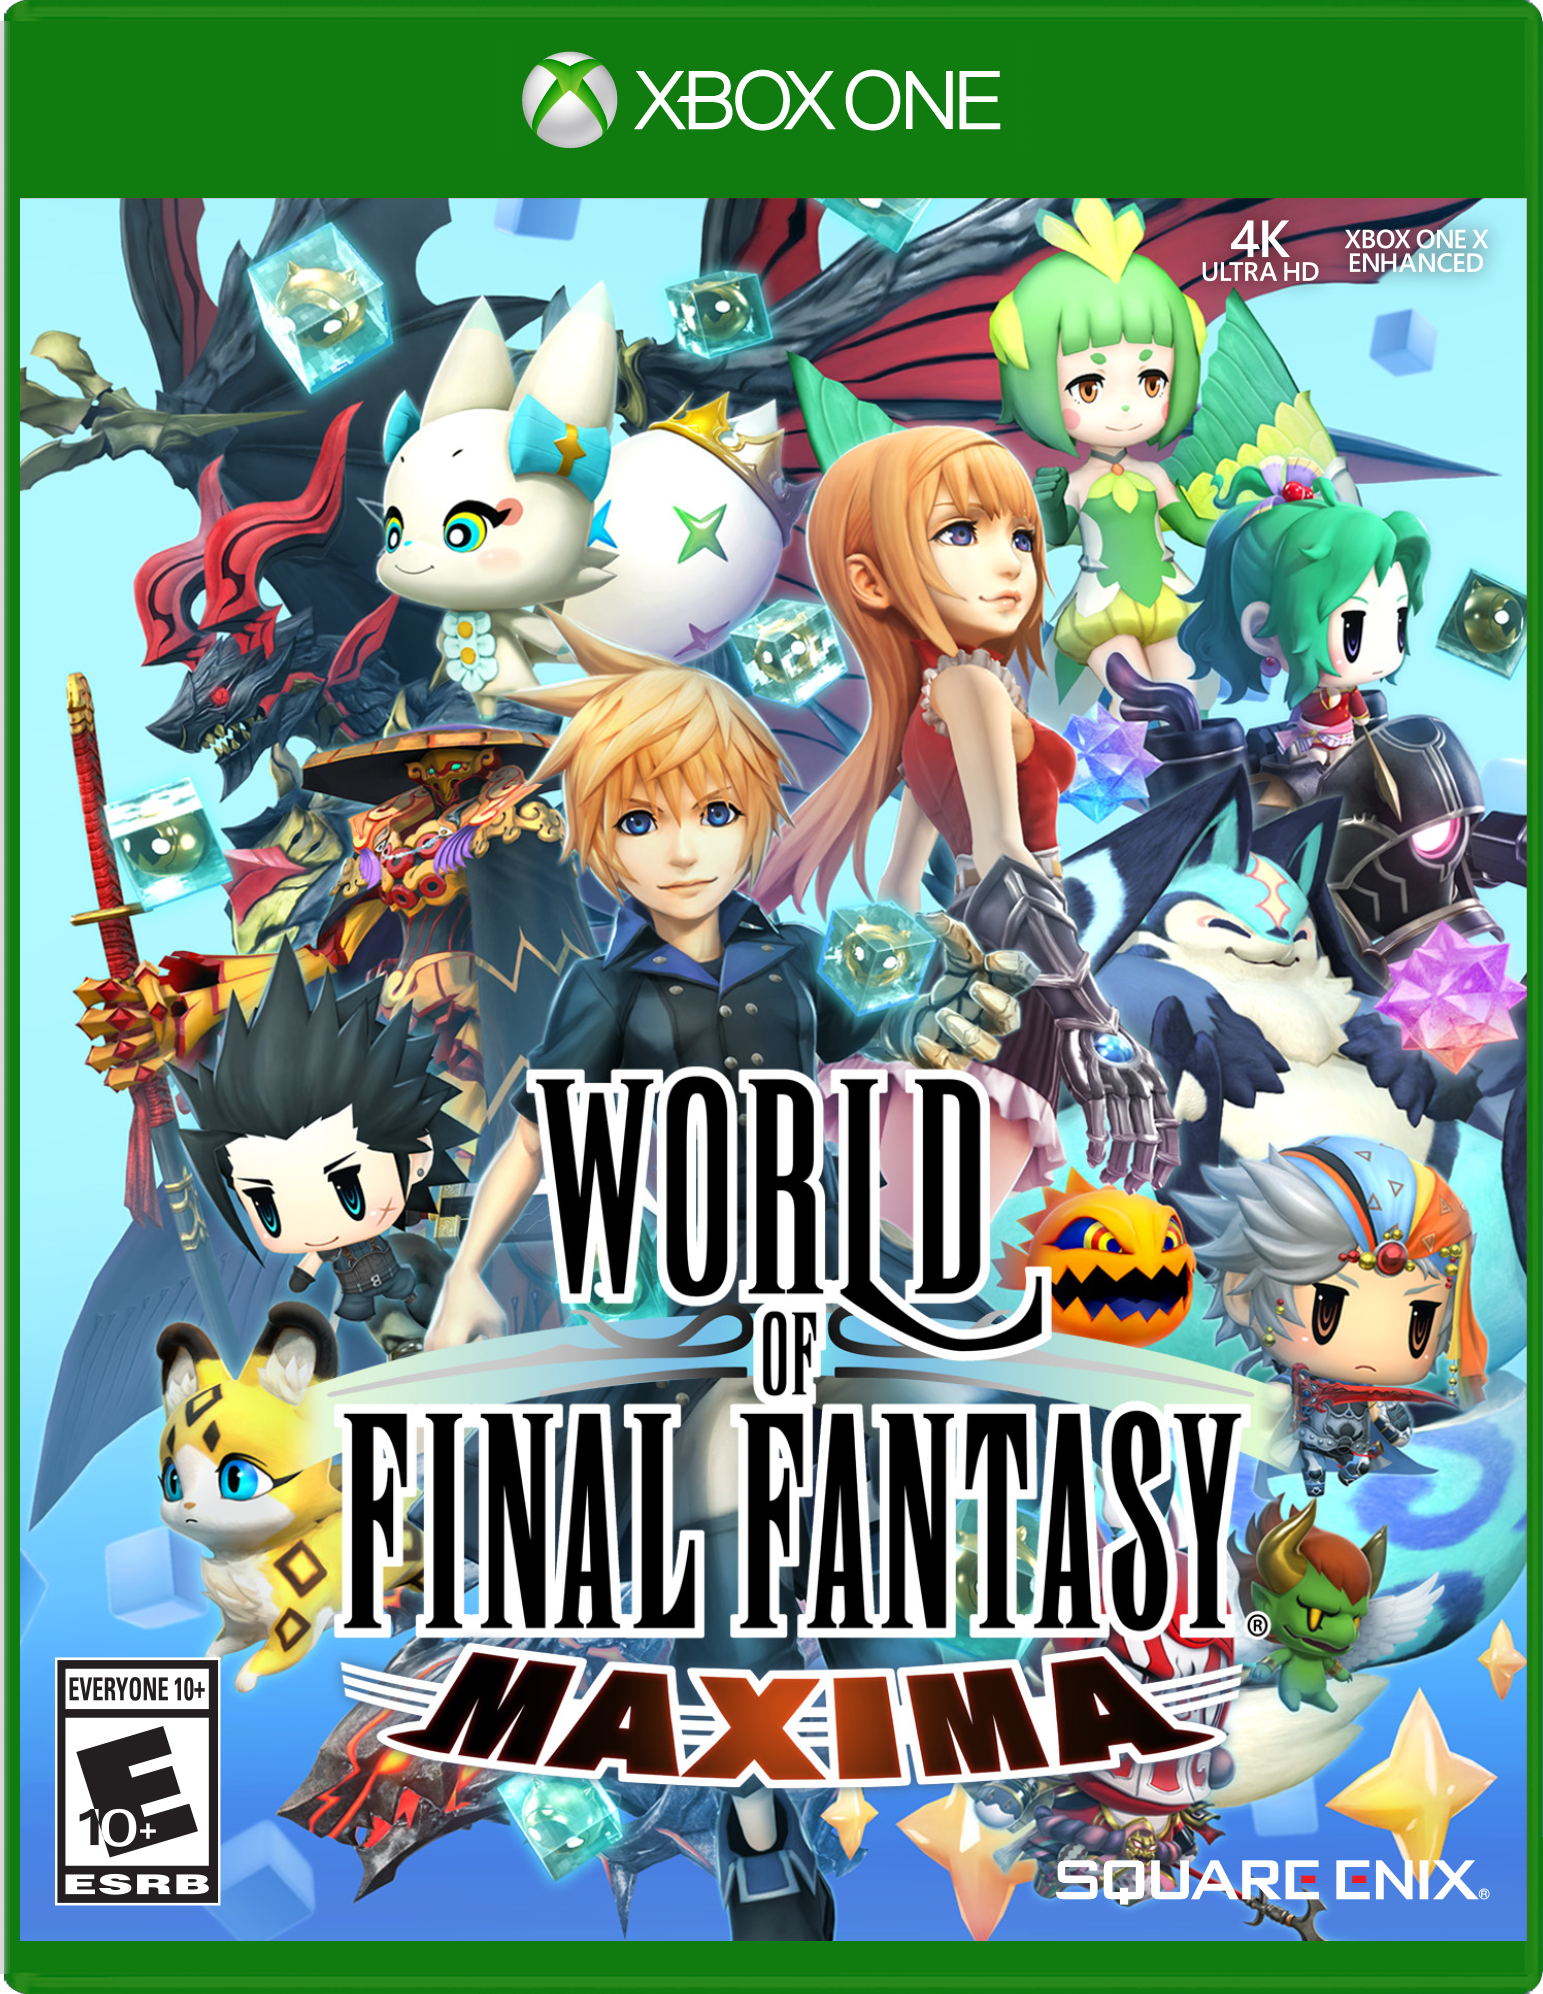 World of Final Fantasy Maxima - Xbox One | Square Enix | GameStop